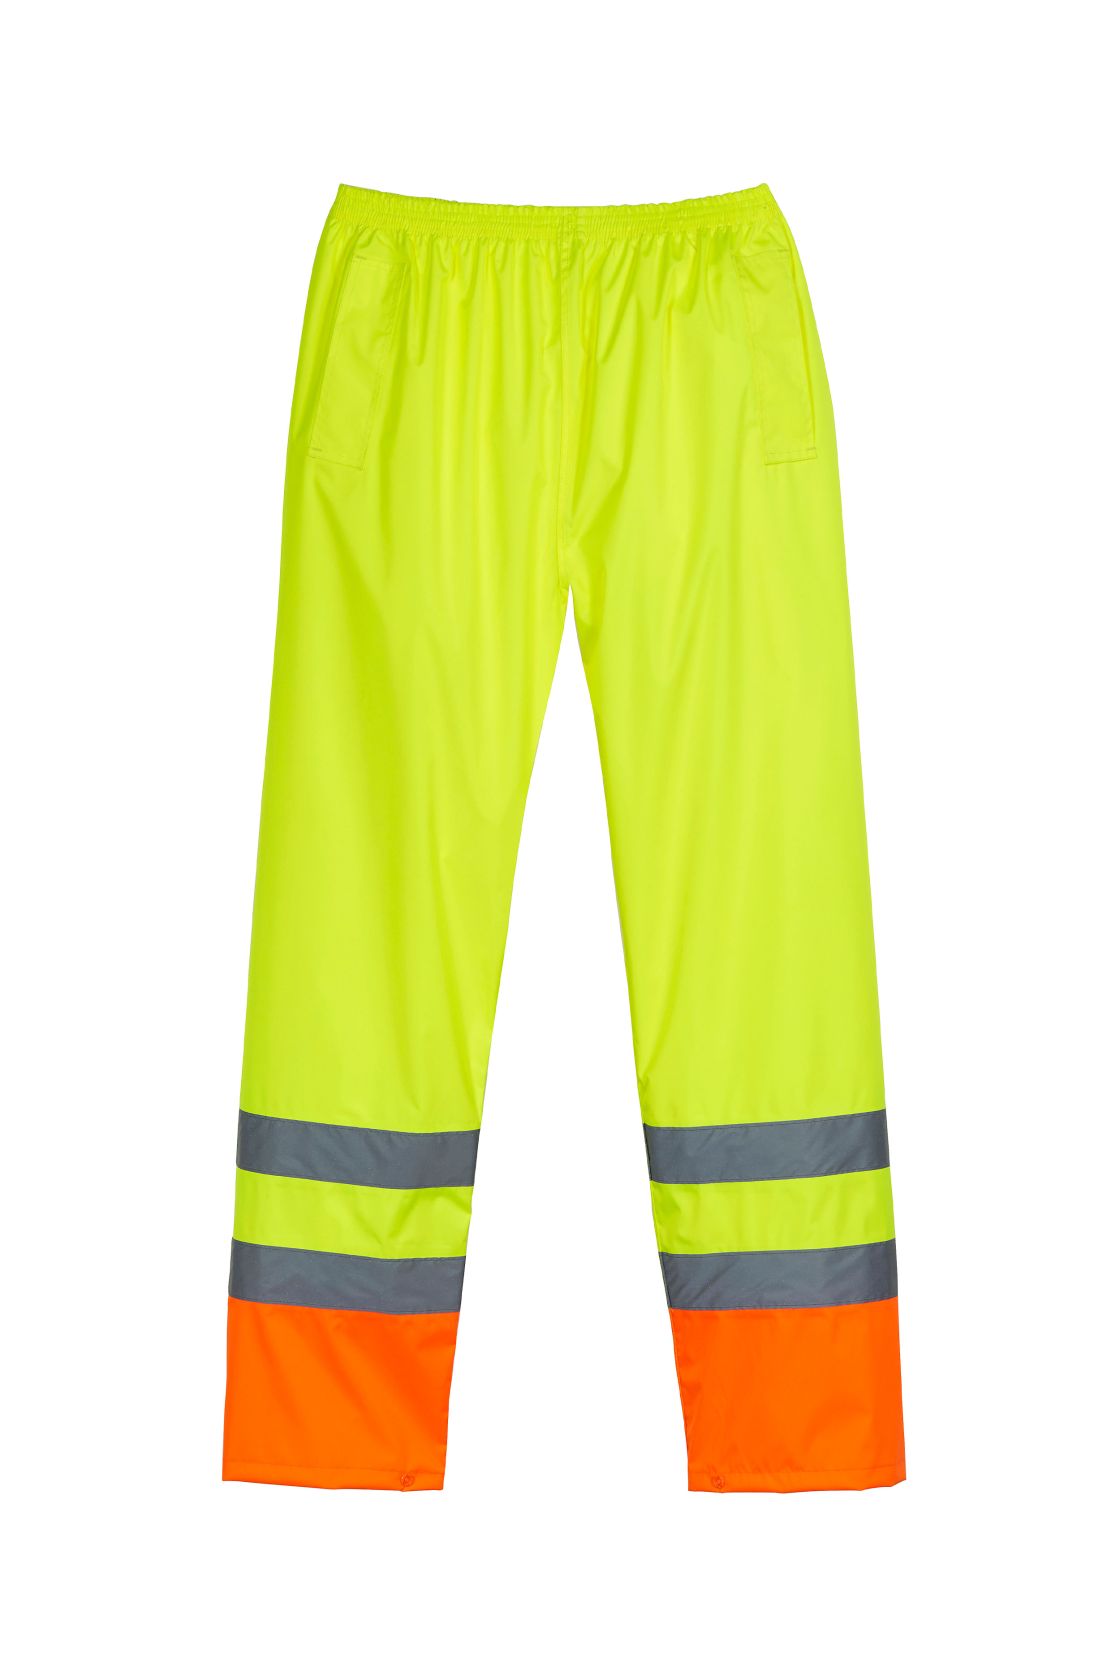 Warnschutz-Regenhose, gelb/orange gelb/orange